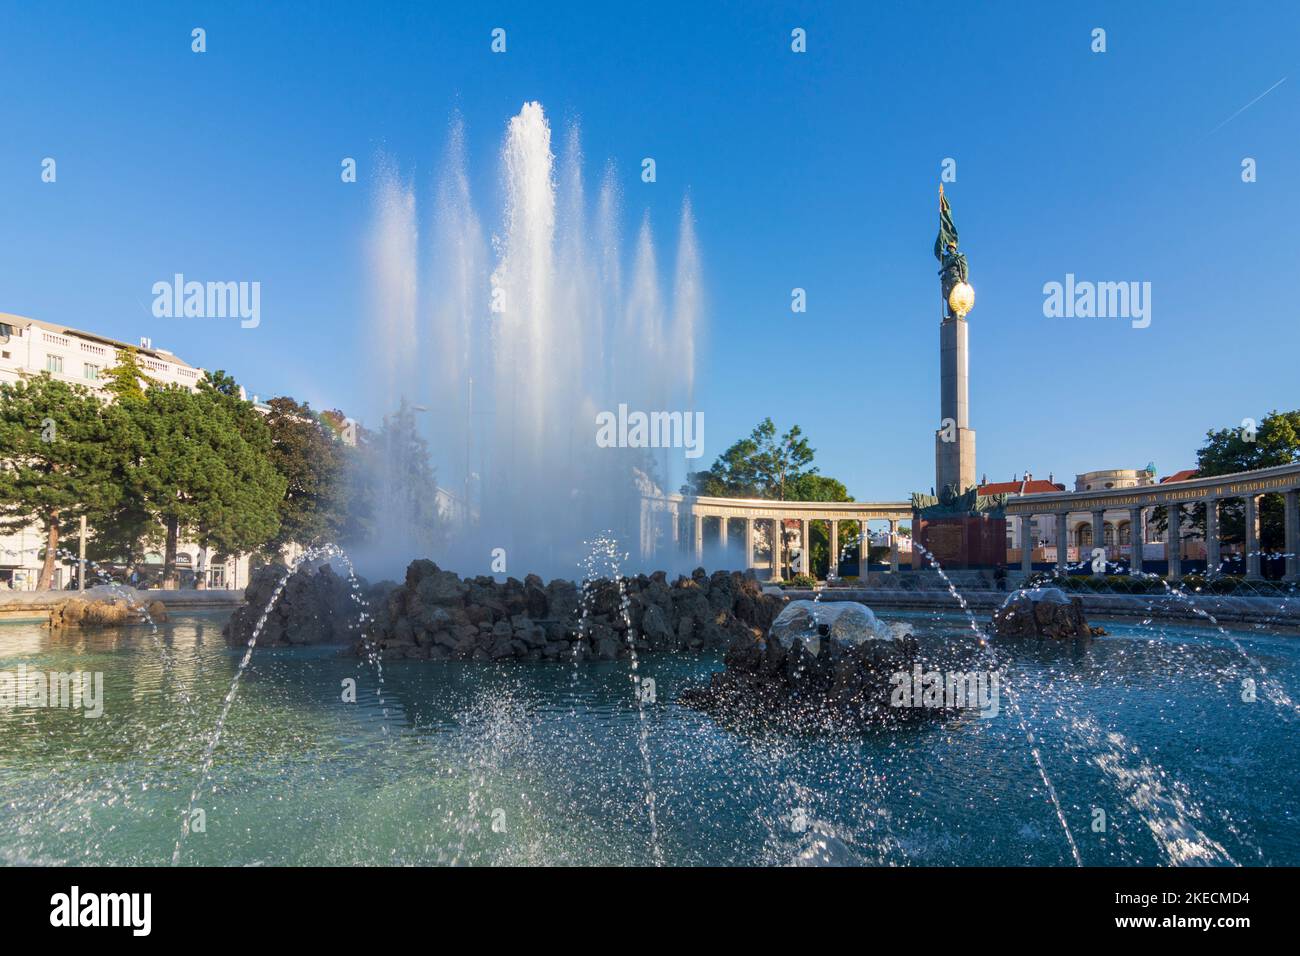 Vienne, Hochstrahlbrunnen (grande fontaine à jet), Heldendenkmal der Roten Armee (Mémorial de la guerre soviétique) en 03. Landstraße, Wien, Autriche Banque D'Images